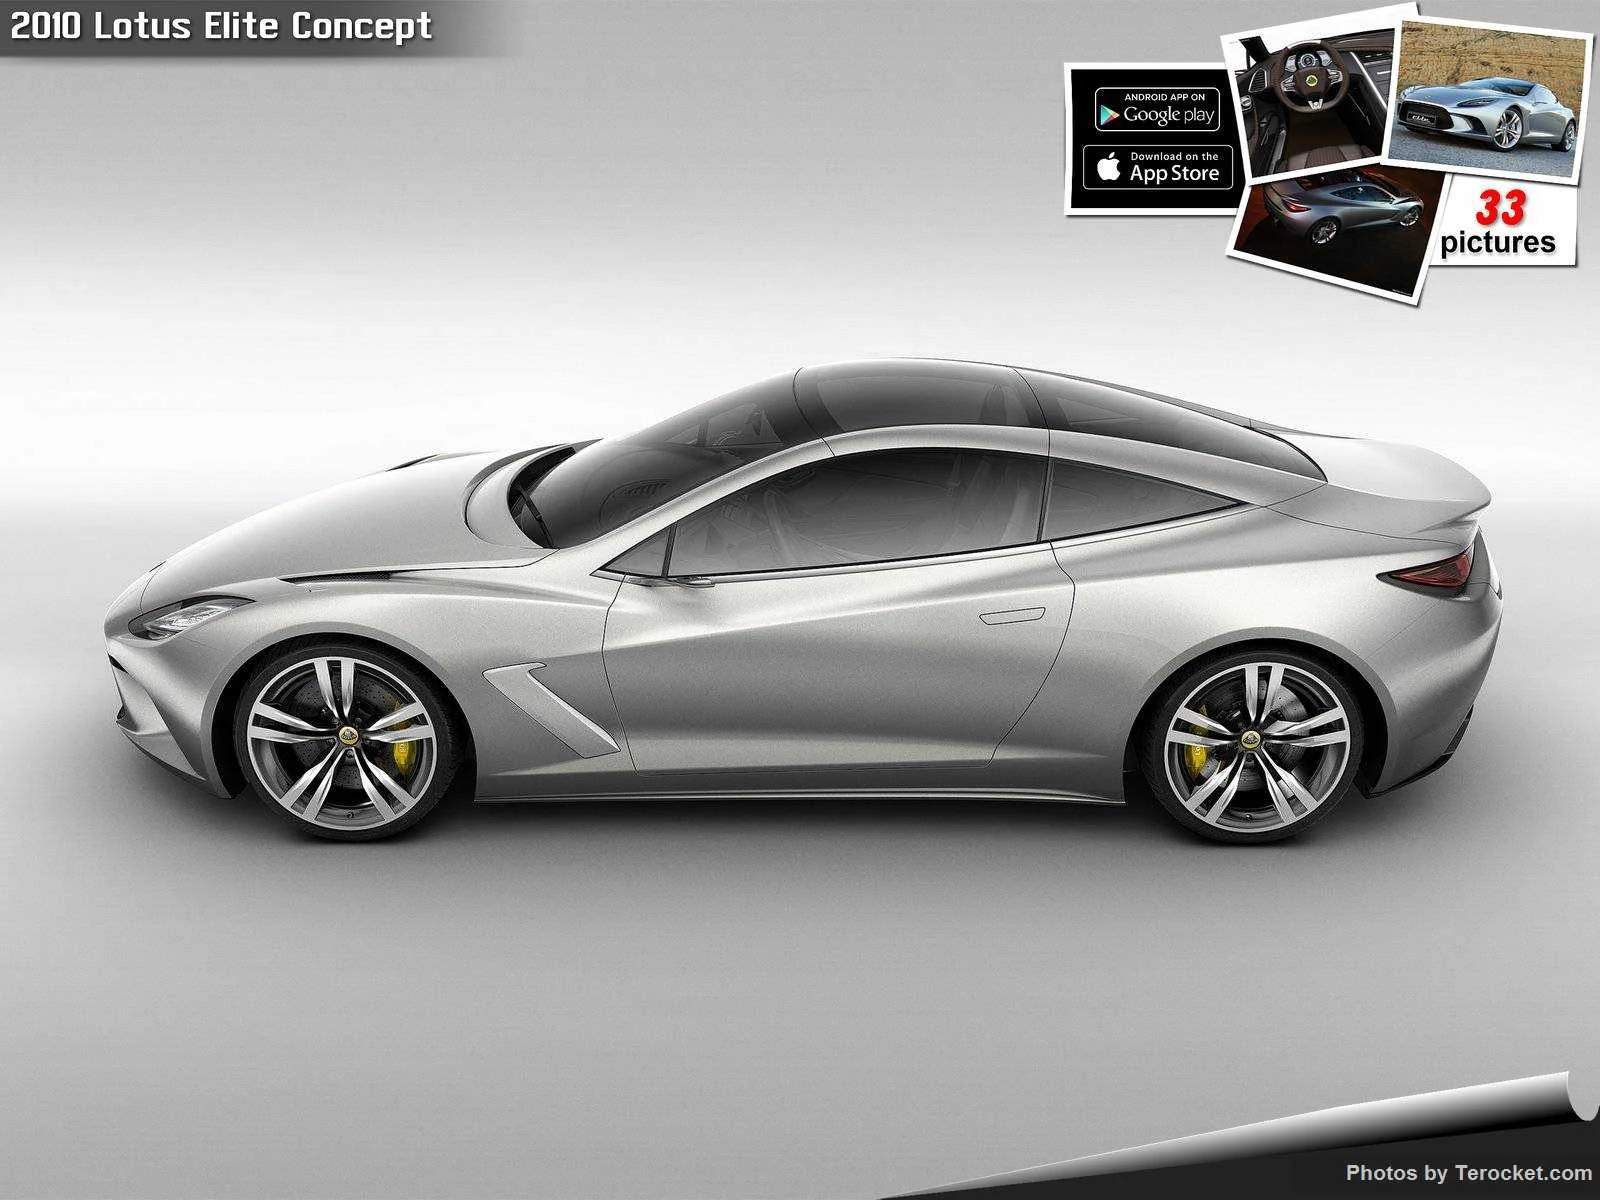 Hình ảnh siêu xe Lotus Elite Concept 2010 & nội ngoại thất